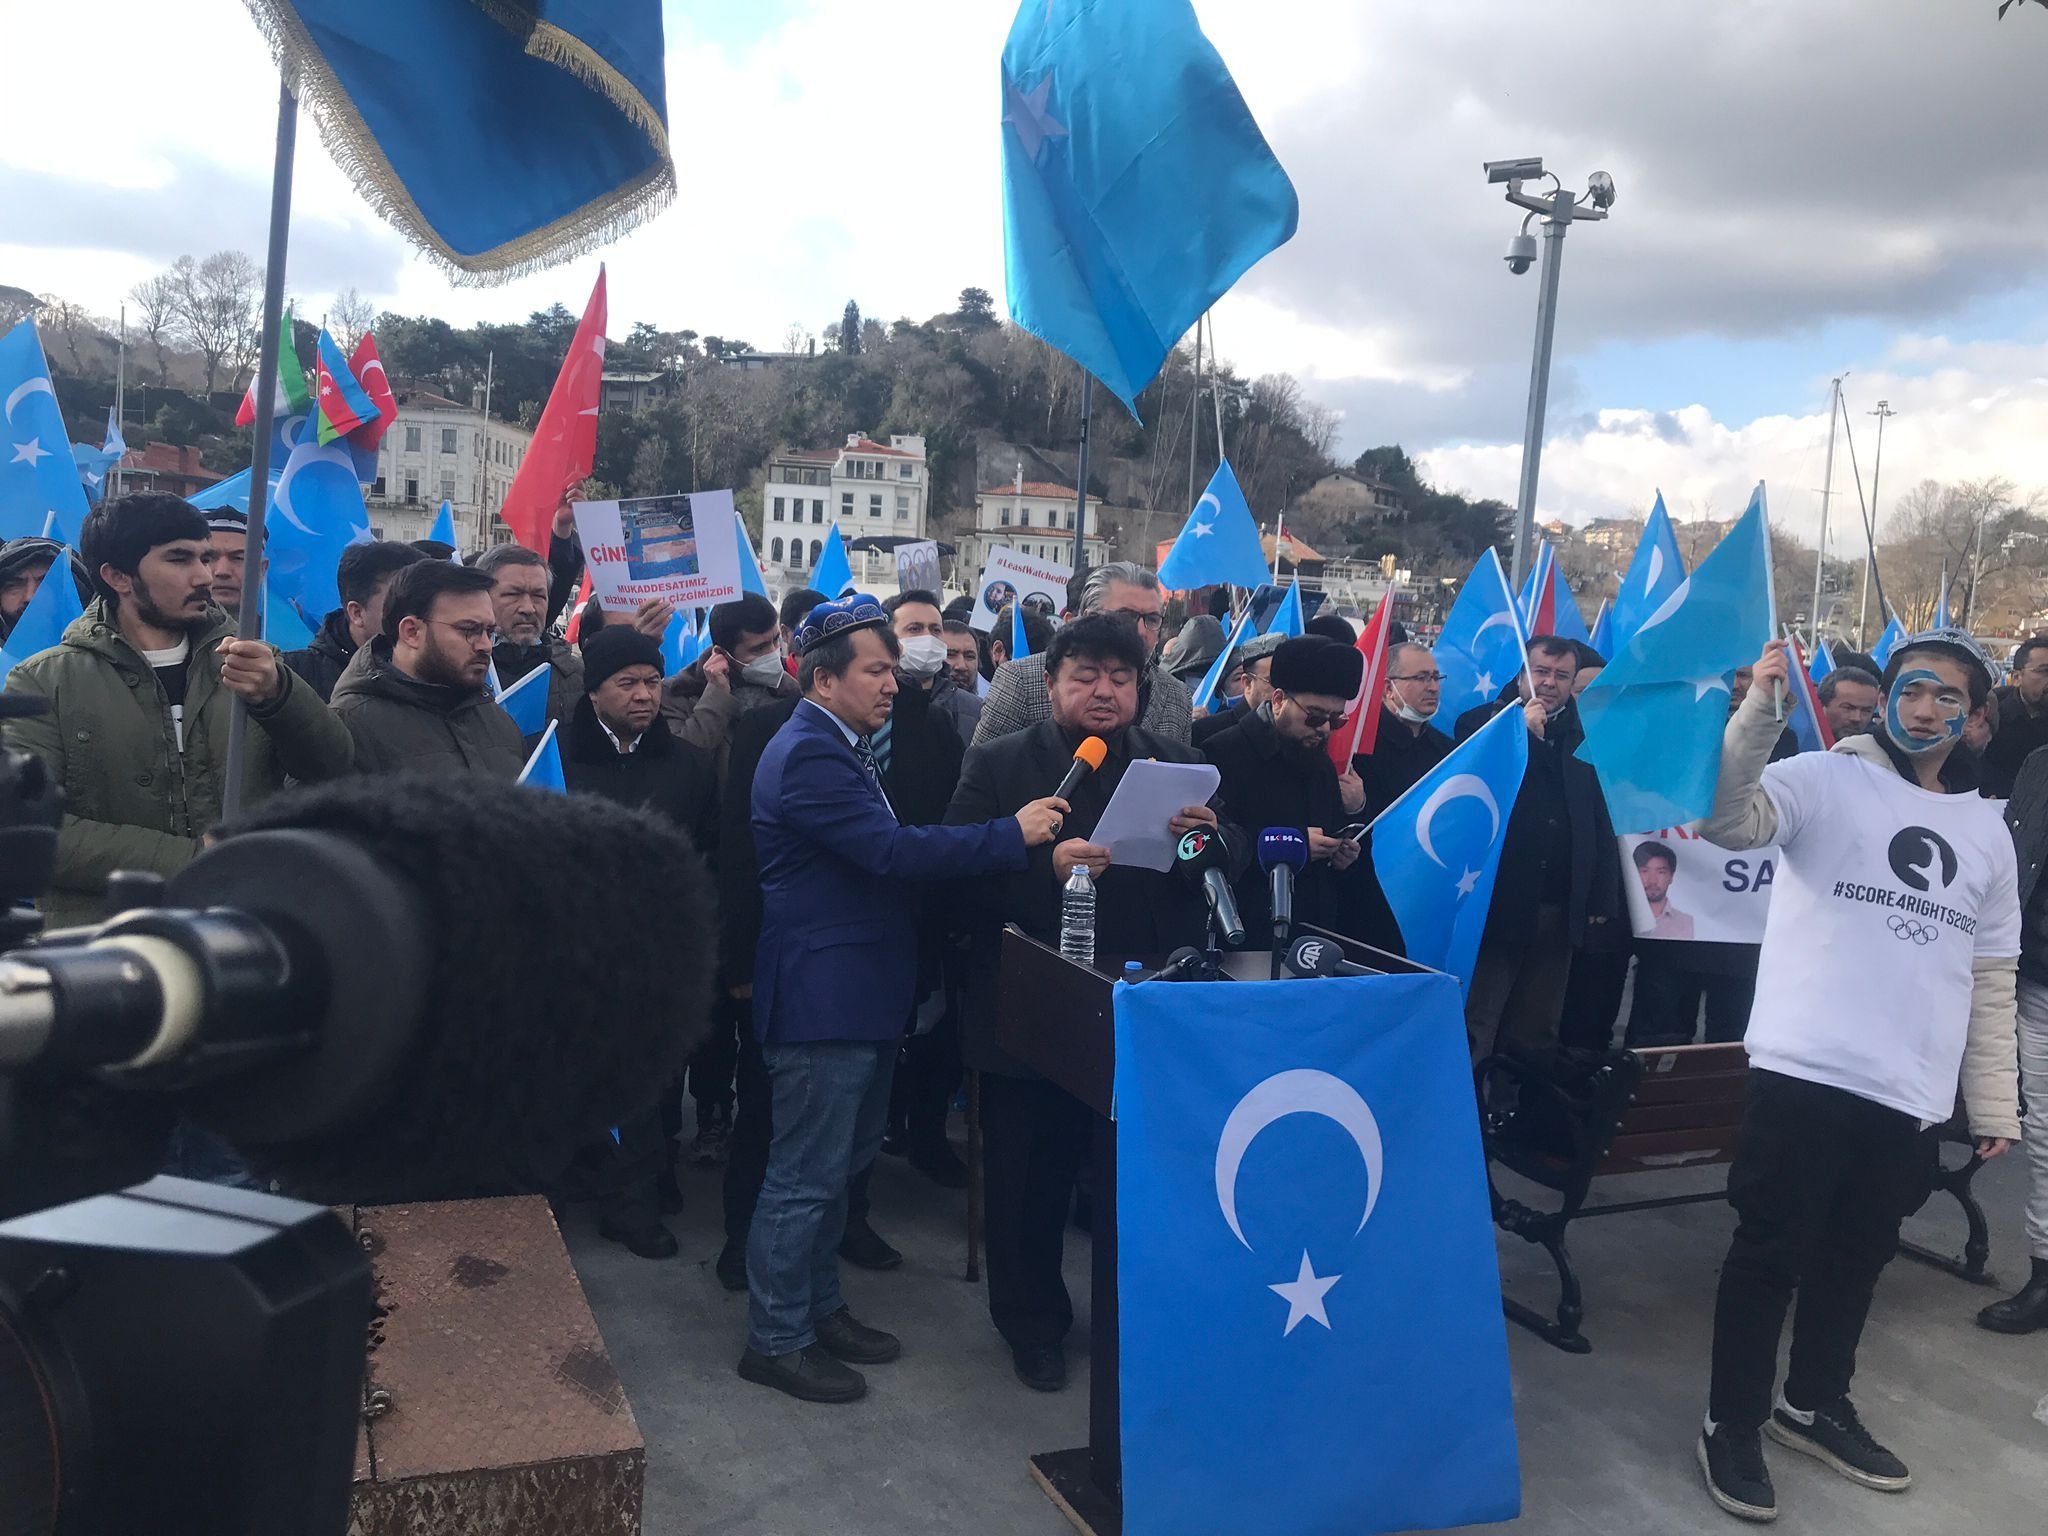 İstanbul’da 5 Şubat Gulca Katliamı anıldı ve Pekin Kış Olimpiyatları protesto edildi. QHA / TURKISHFORUM -ABDULLAH TÜRER YENER - dogu turkistan uygurlar